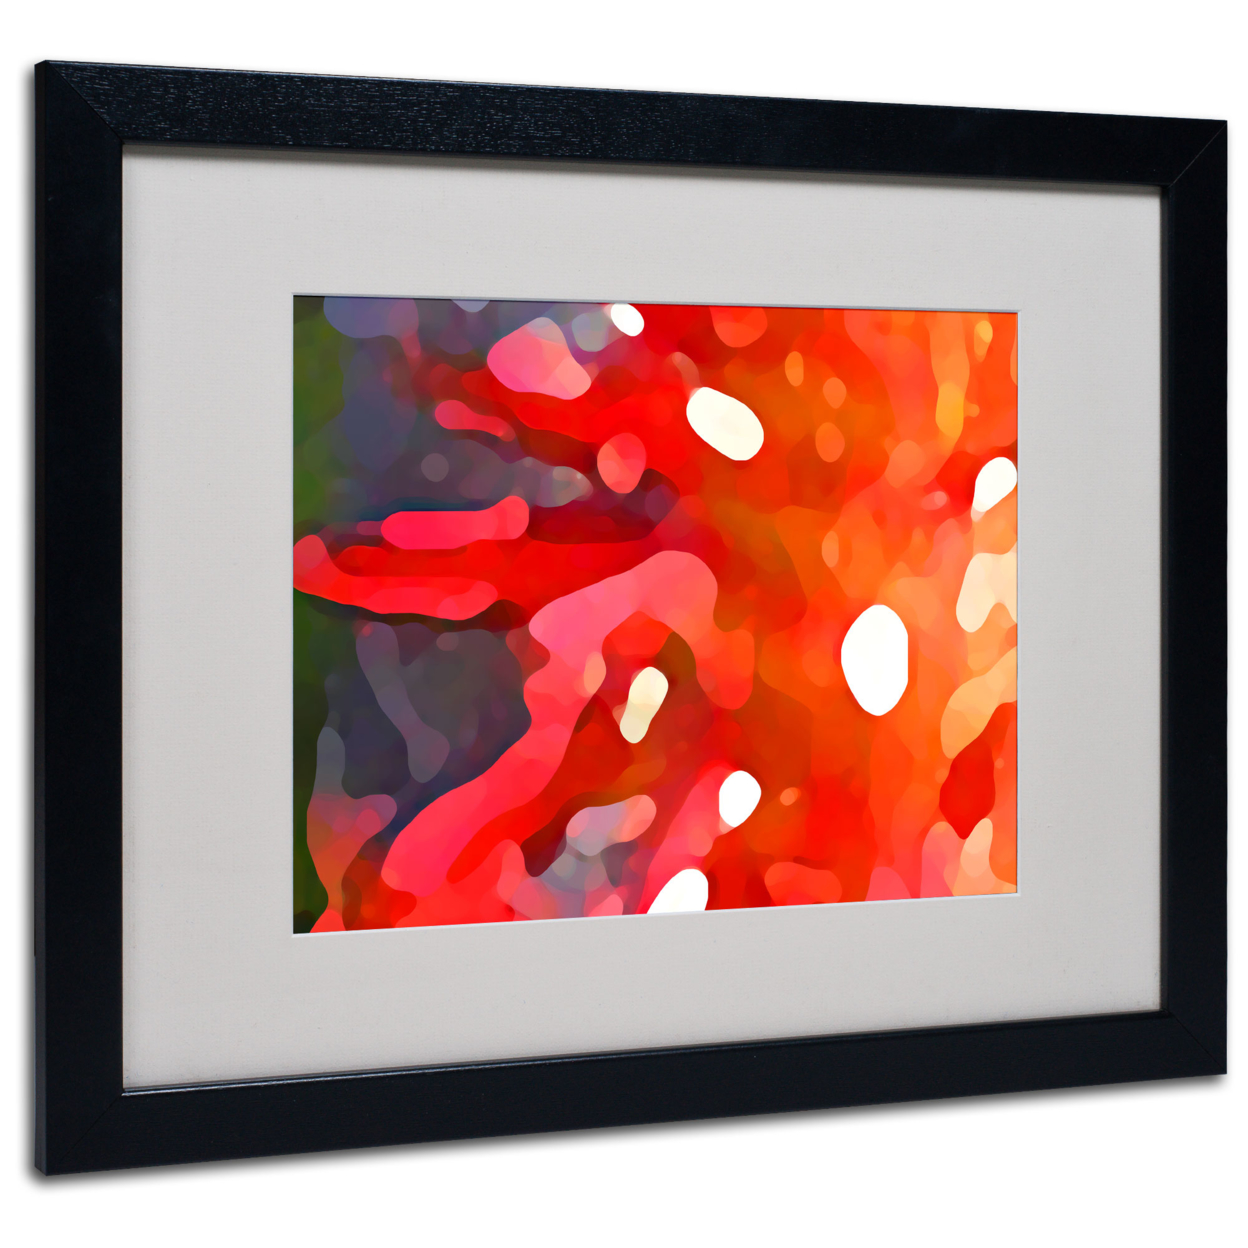 Amy Vangsgard 'Red Sun' Black Wooden Framed Art 18 X 22 Inches